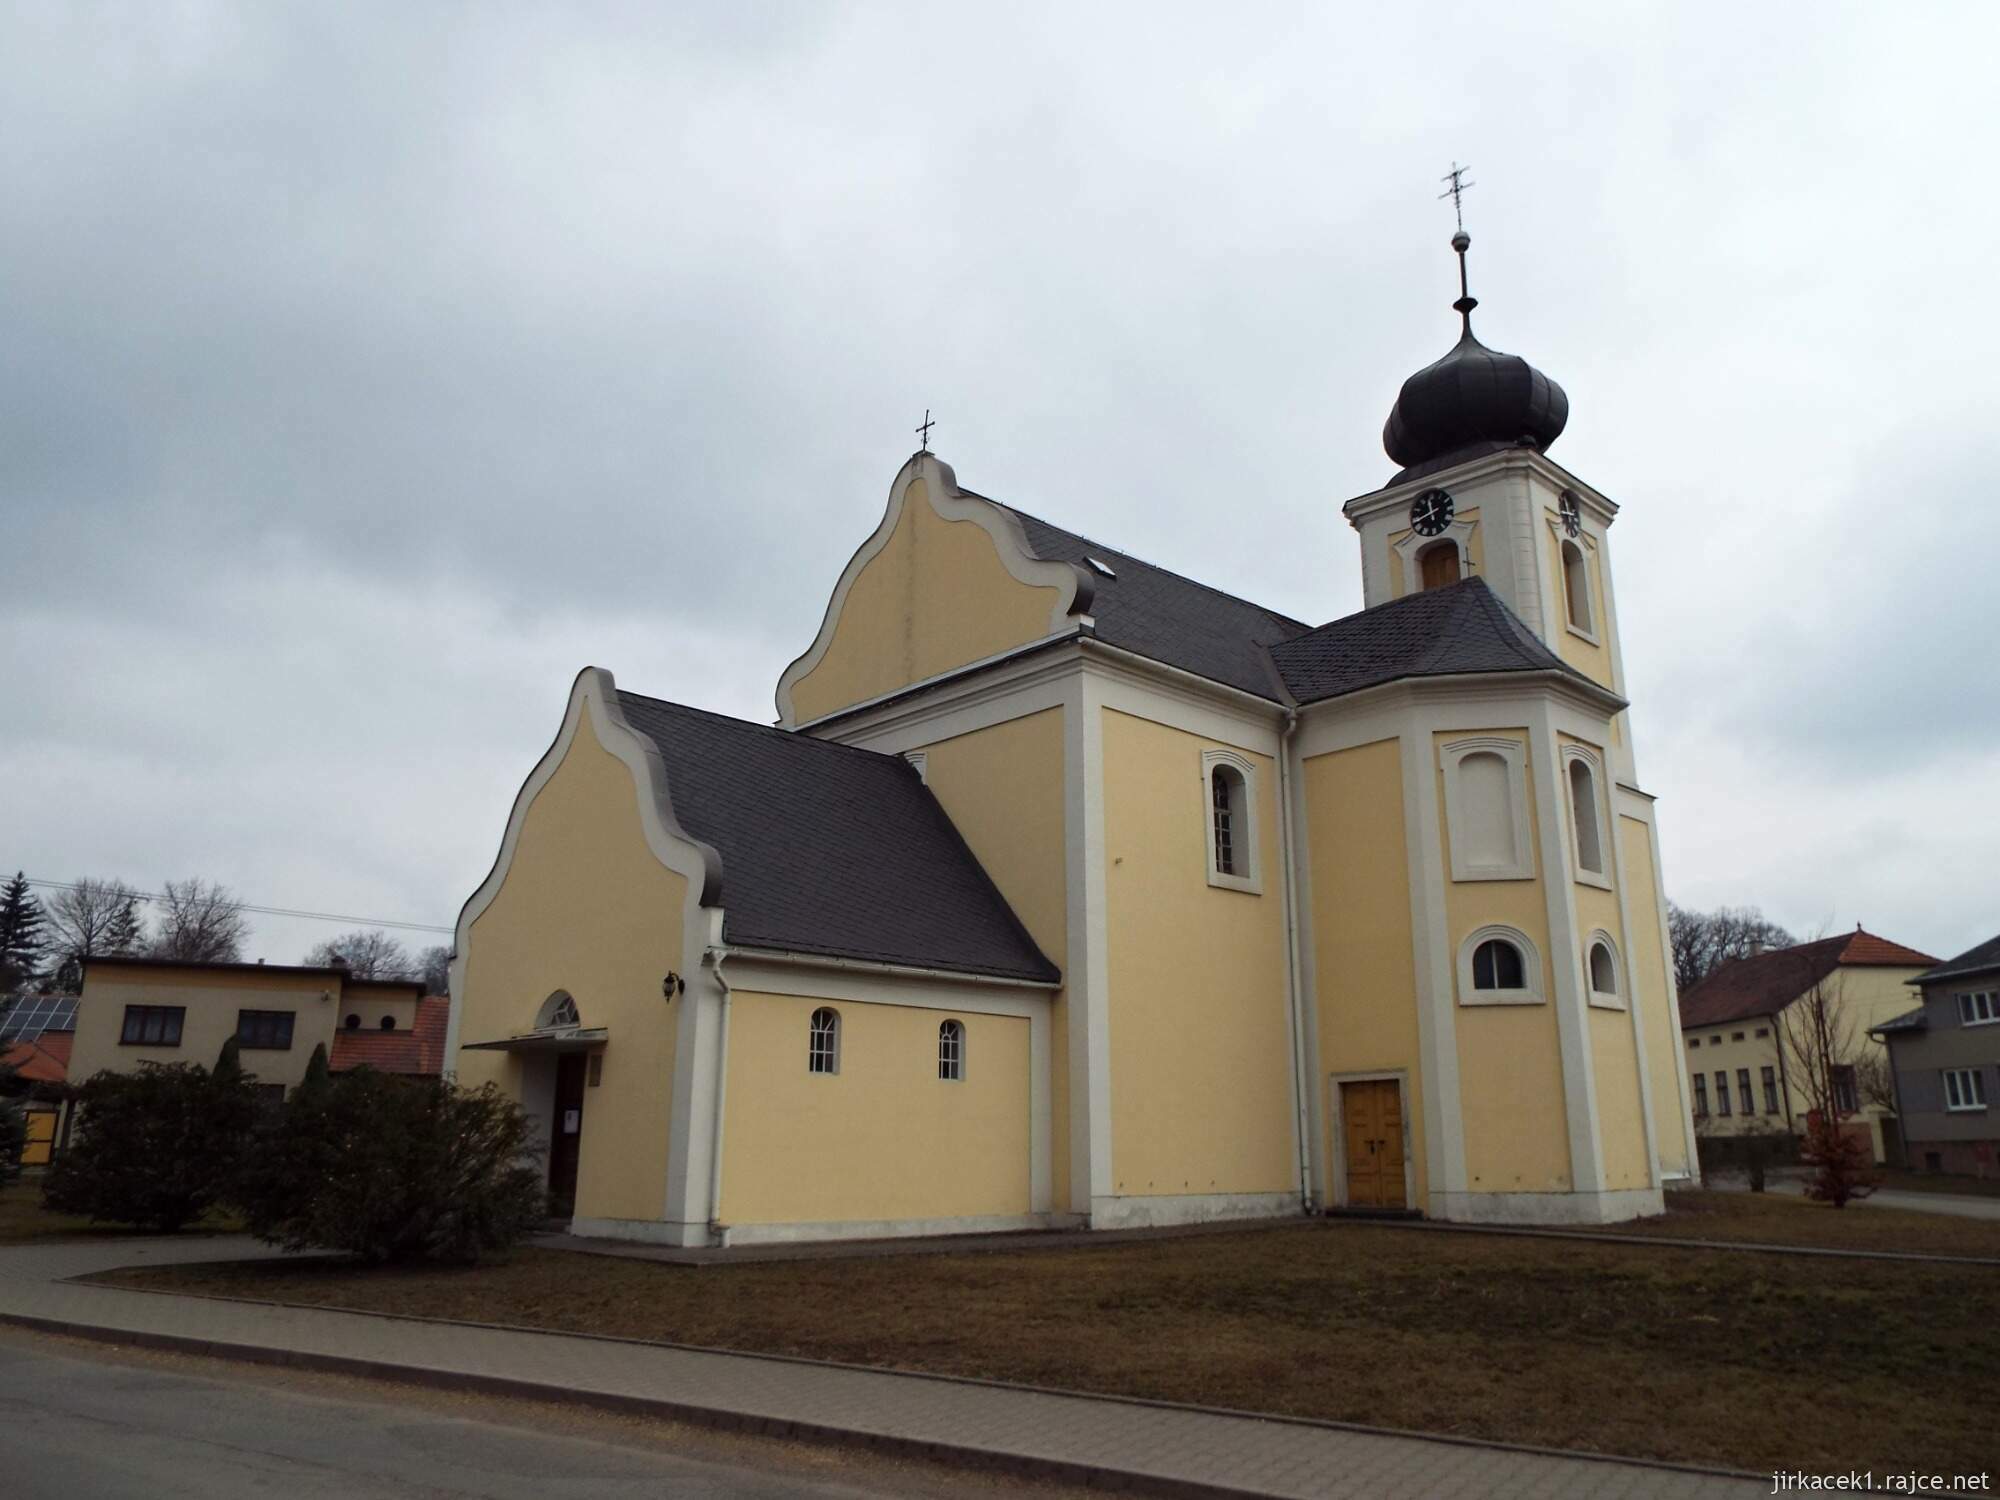 02 - Jaroměřice - Kostel Všech svatých 06 - celkový pohled